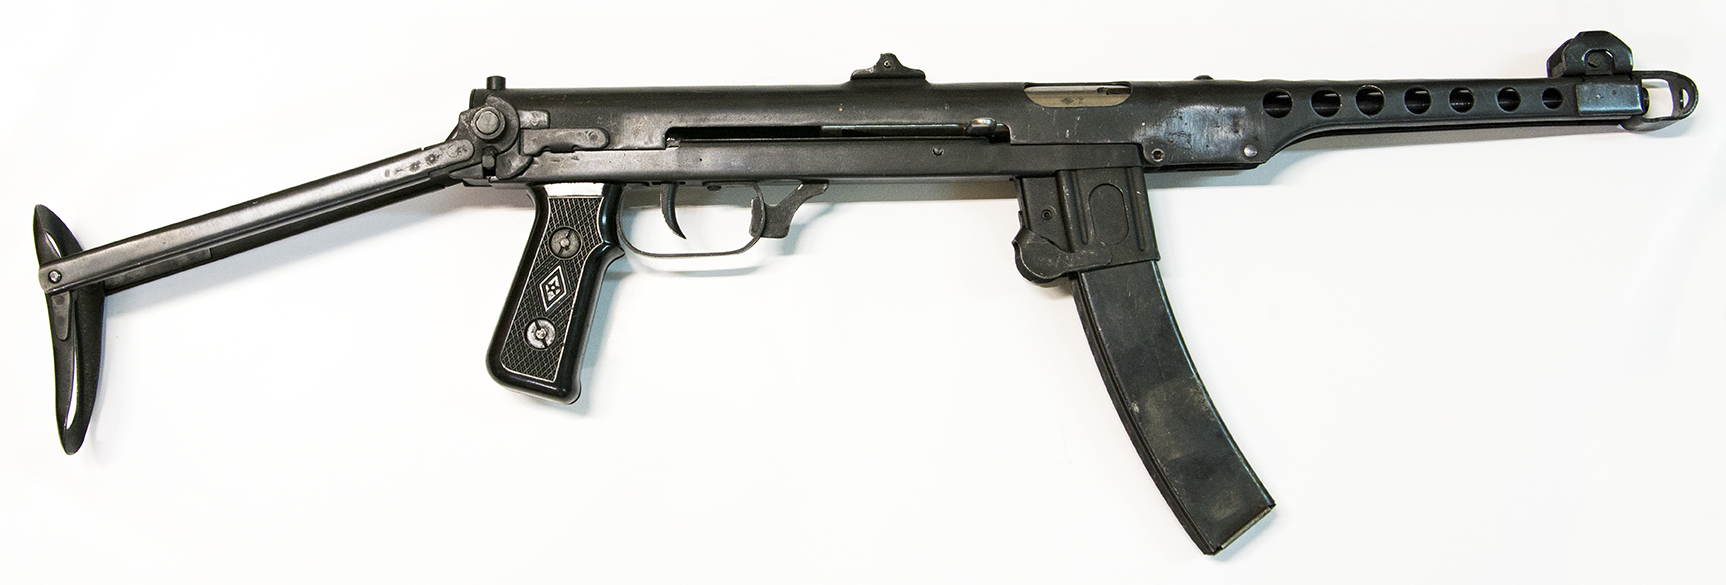 Пистолет пулемет mp-38 и mp-40, обзор автоматов